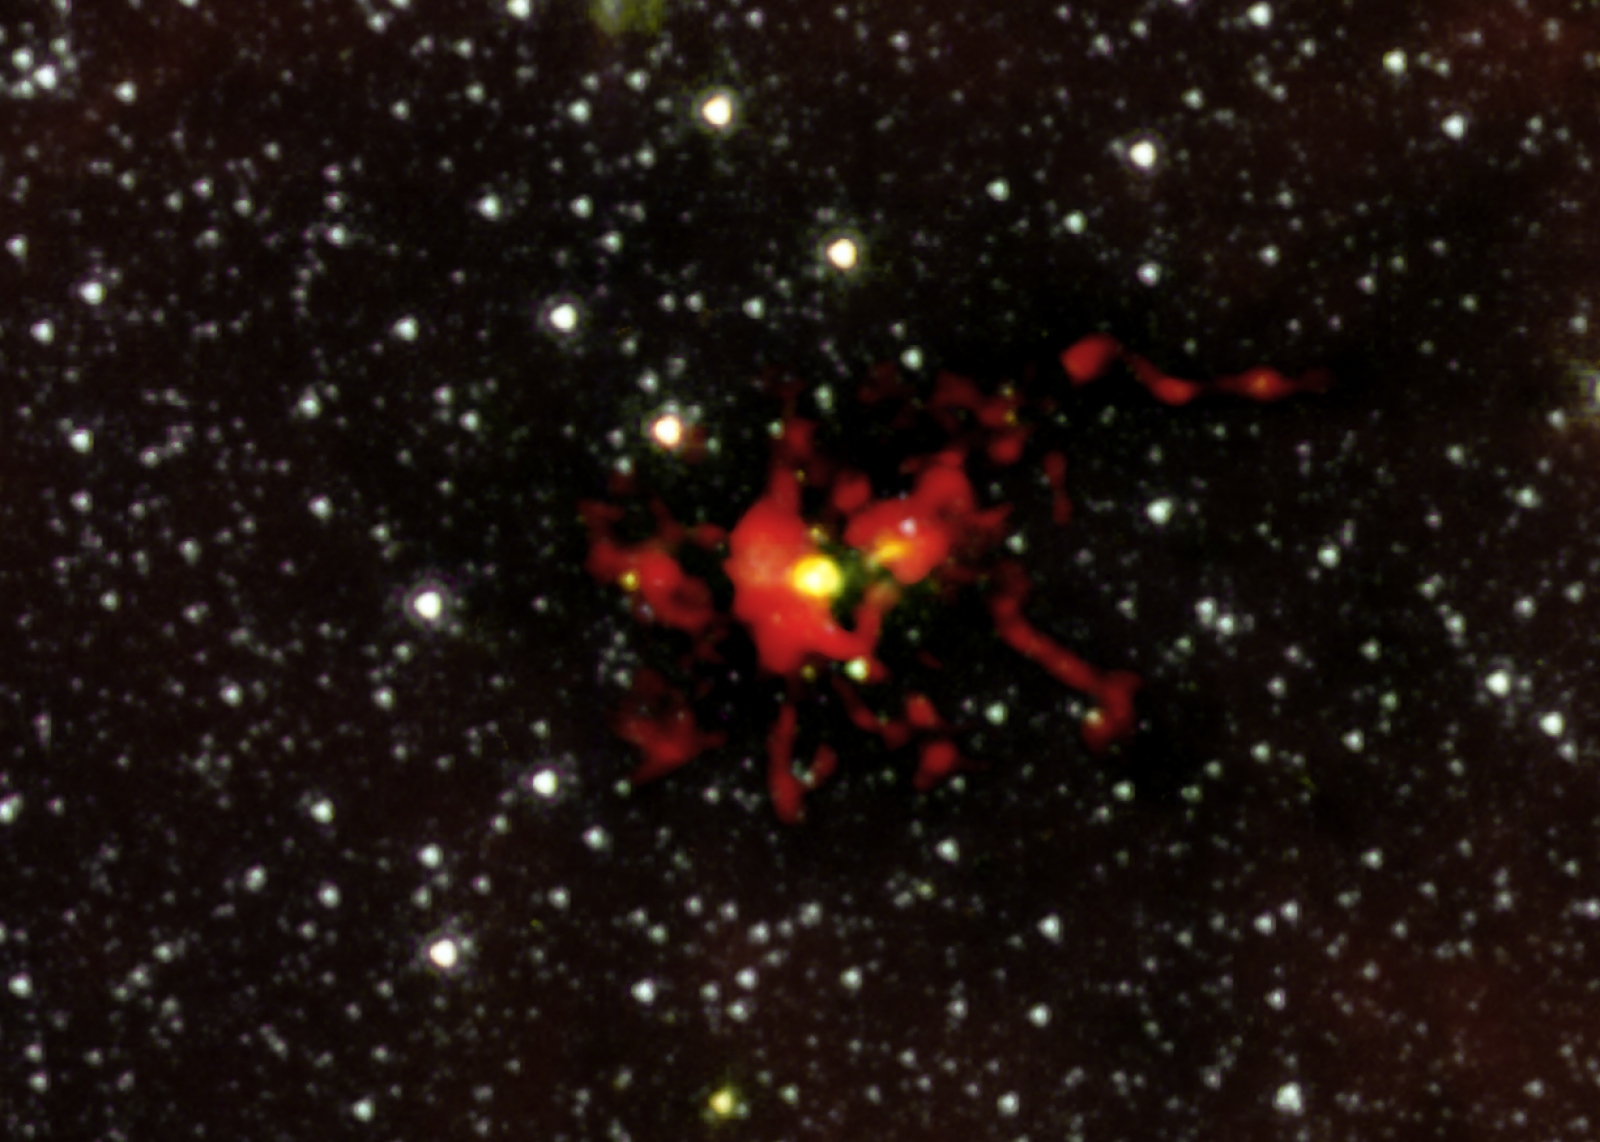 La burbuja amarilla del centro de la imagen es el embrión de estrella gigante.